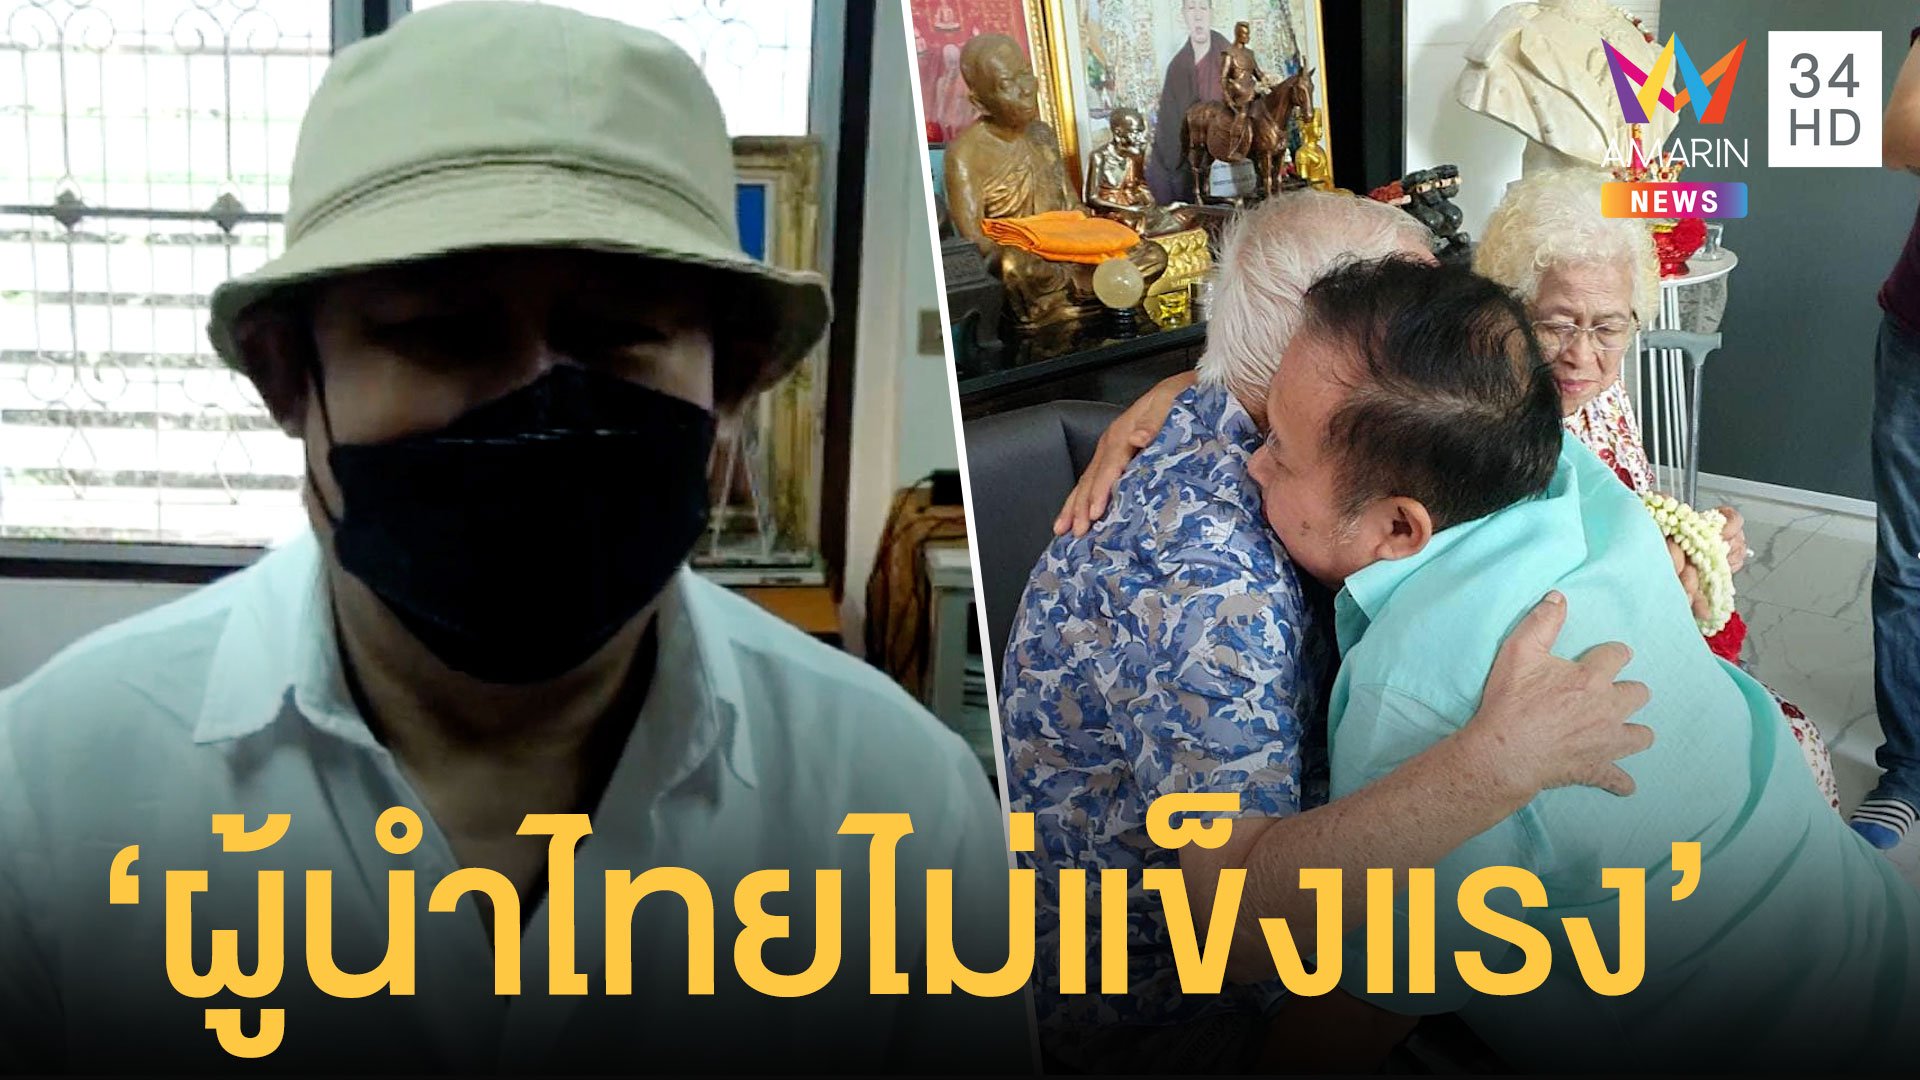 เป็ด เชิญยิ้ม สุดเศร้าเสียพ่อแม่ โชคร้ายผู้นำไทยไม่แข็งแรง | ข่าวอรุณอมรินทร์ สุดสัปดาห์ | 10 ก.ค. 64 | AMARIN TVHD34